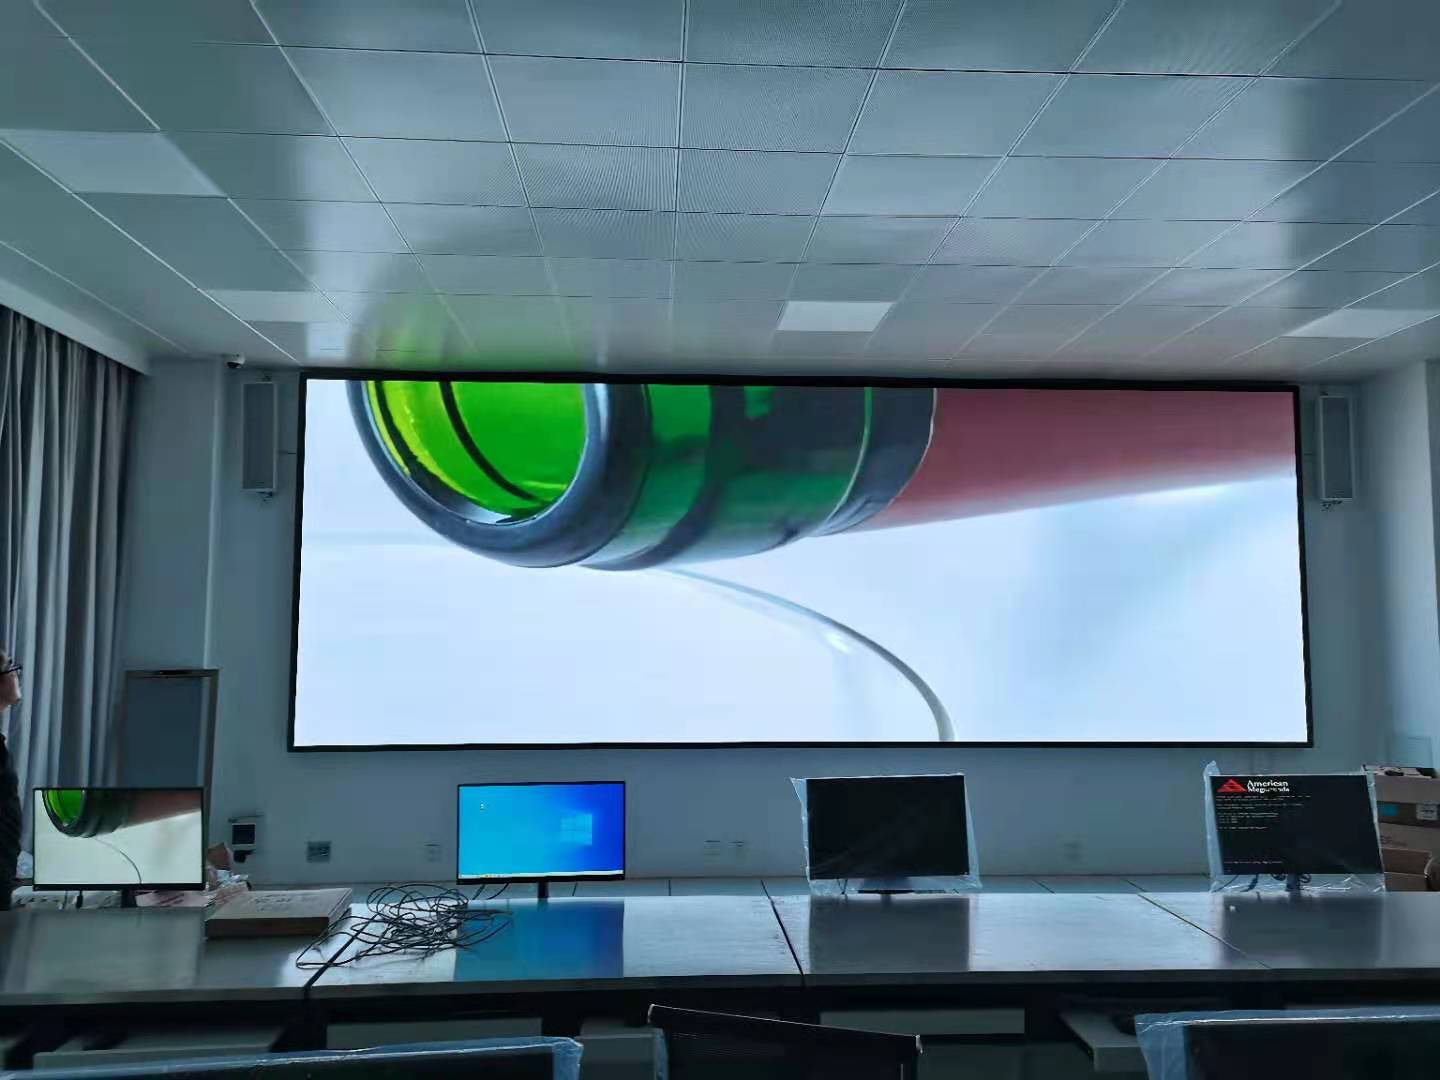 石横特钢集团培训学院教室P2.0高清全彩LED显示屏案例